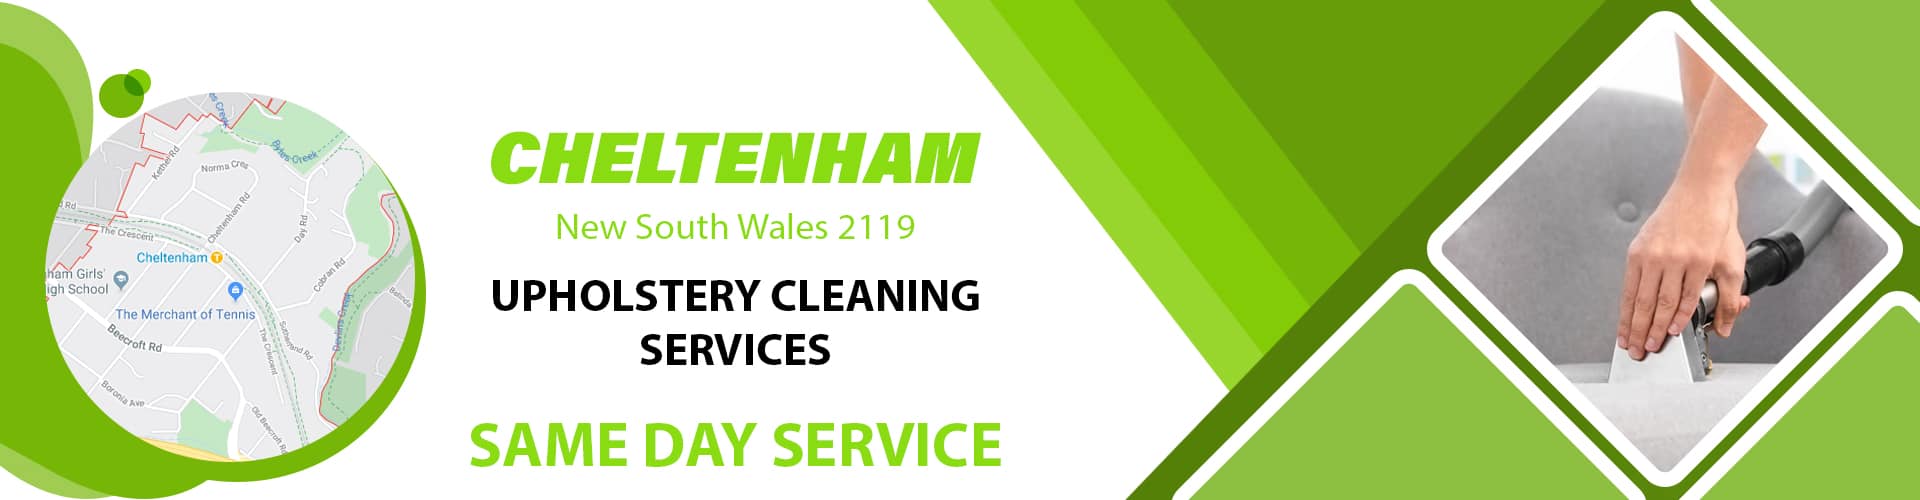 Upholstery Cleaning Cheltenham